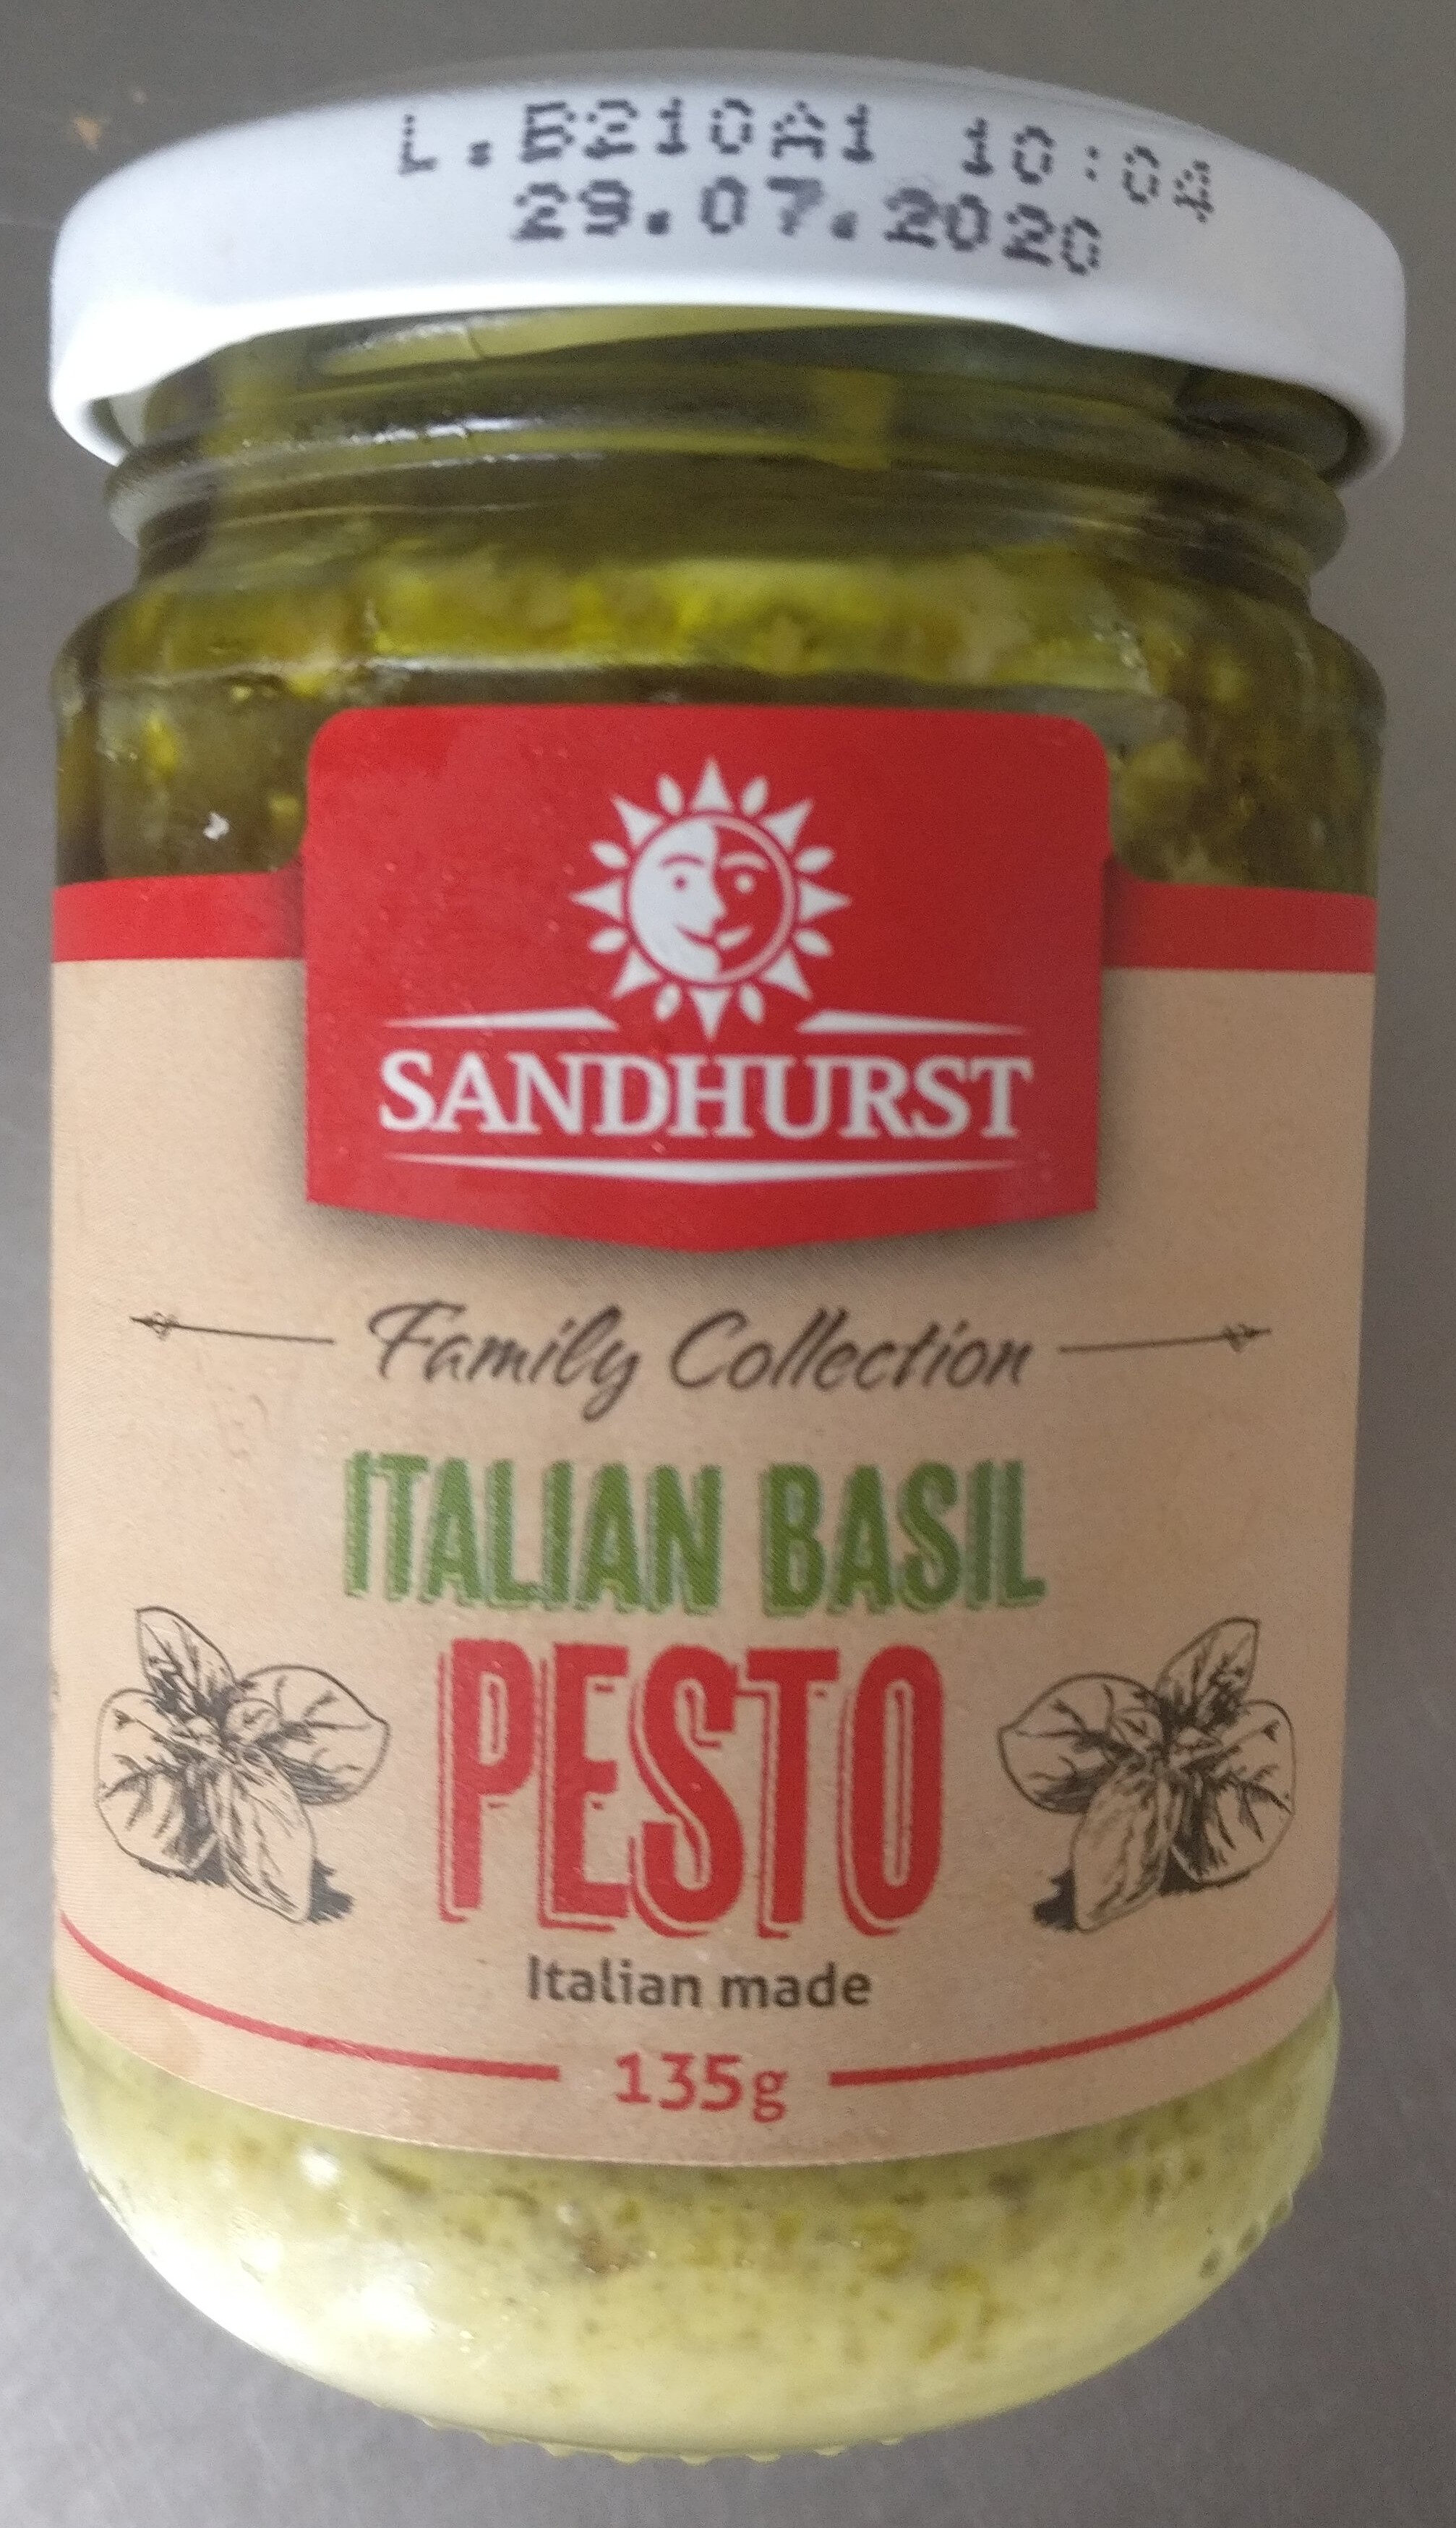 Italian Basil Pesto - Product